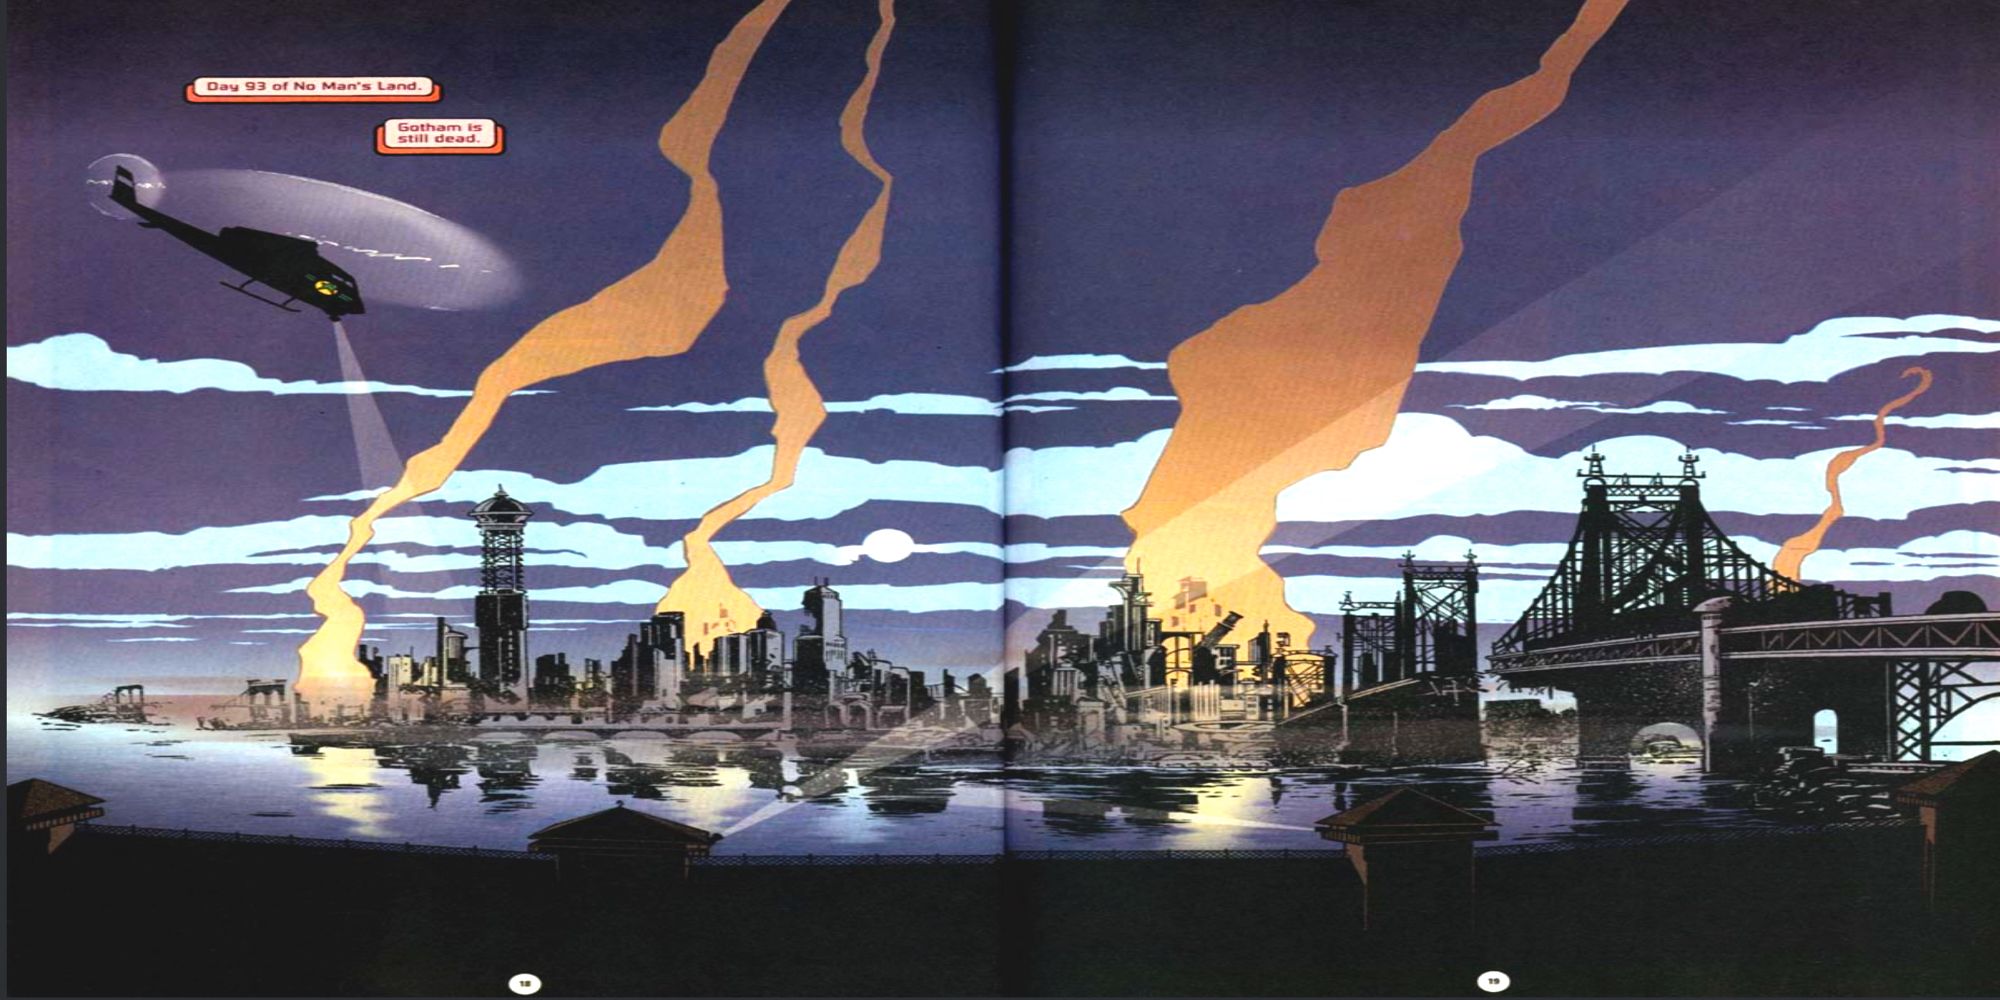 Gotham wasteland comic book illustration of city. 